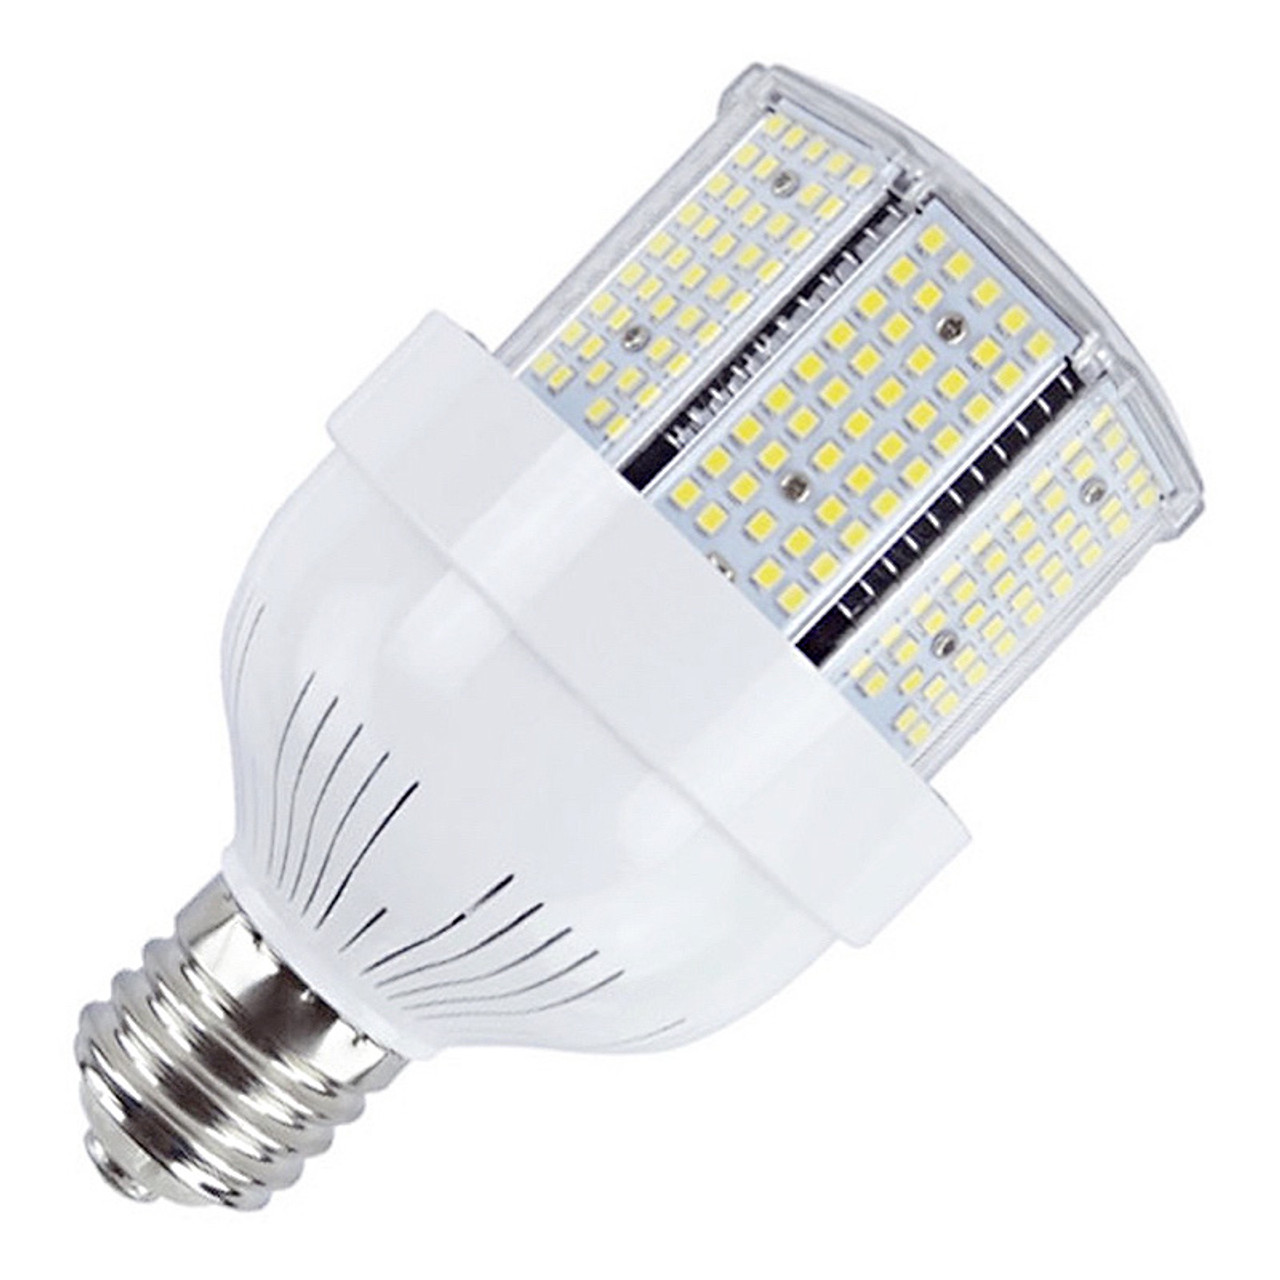 Watt LED Bulb, Replaces 300-350 Watt HID, 12,750 Lumen